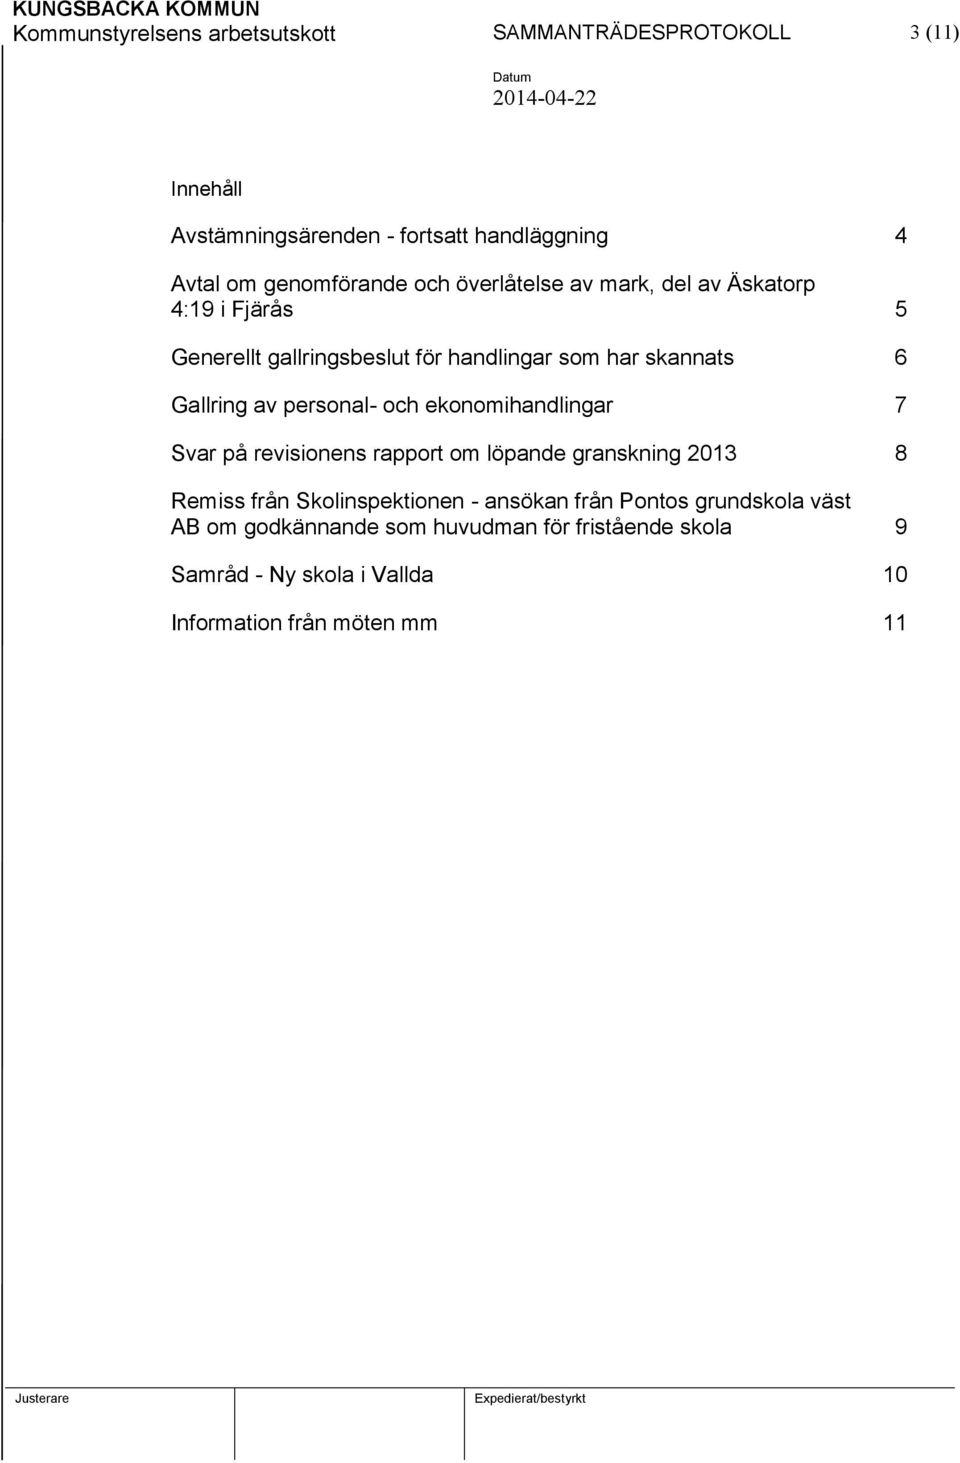 Gallring av personal- och ekonomihandlingar 7 Svar på revisionens rapport om löpande granskning 2013 8 Remiss från Skolinspektionen -